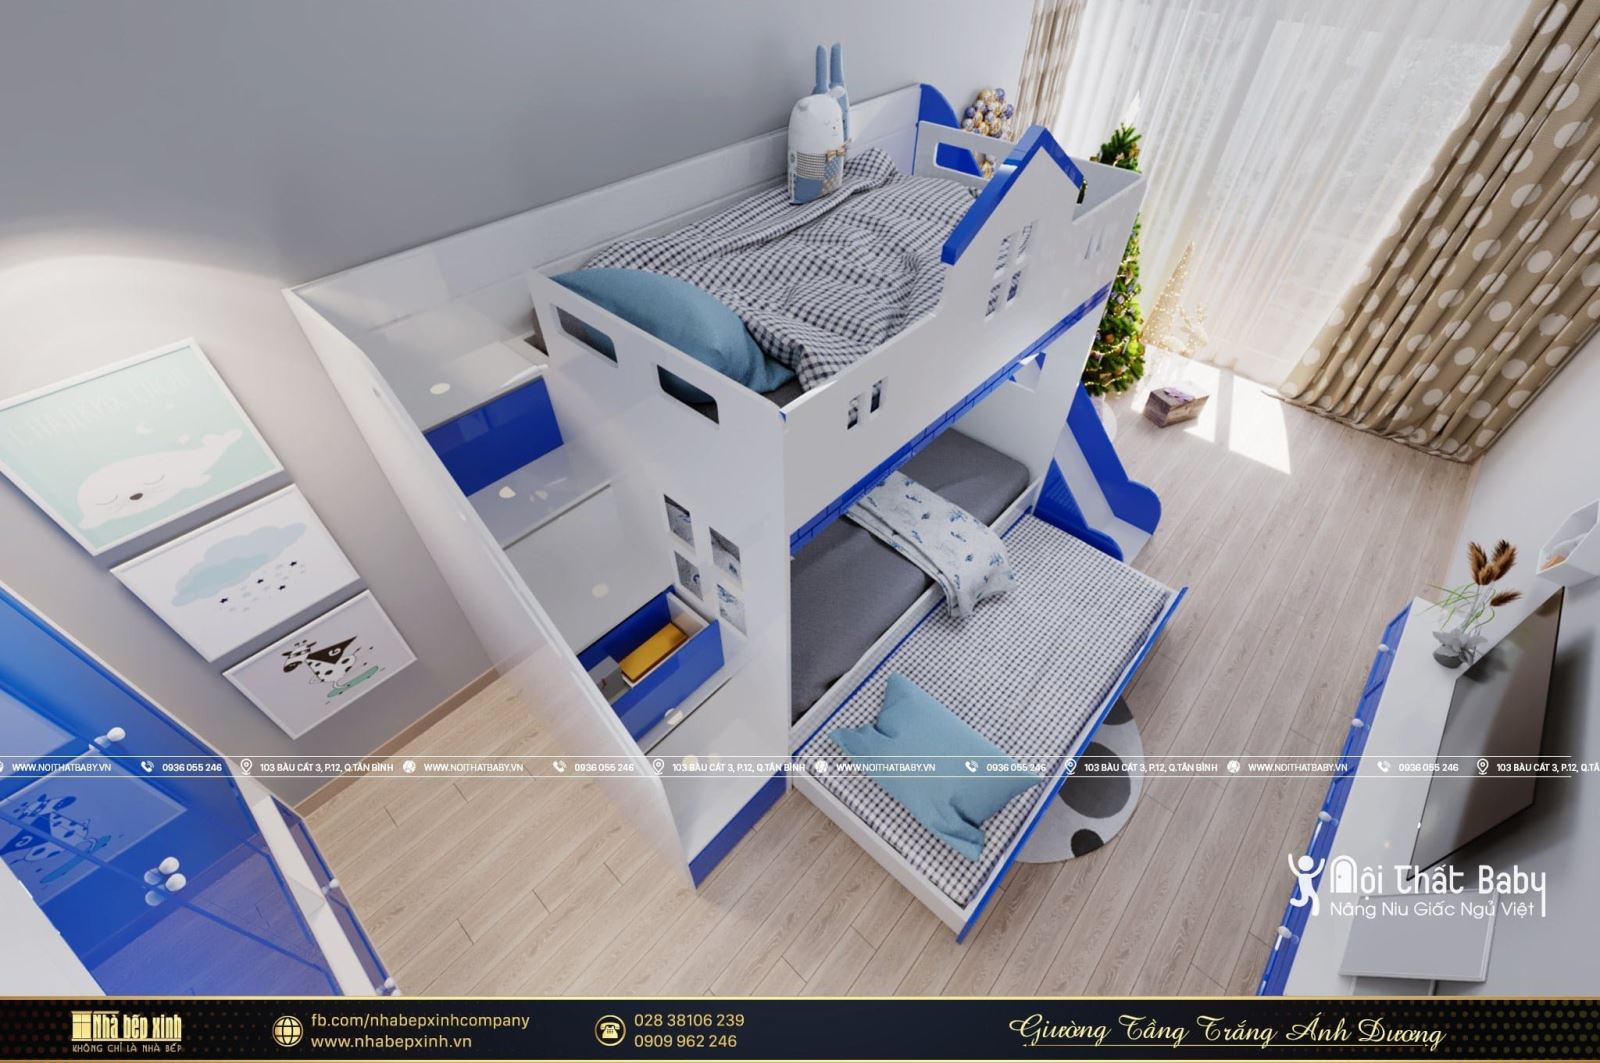 Mẫu giường tầng trắng ánh dương đẹp mê ly năm 2021